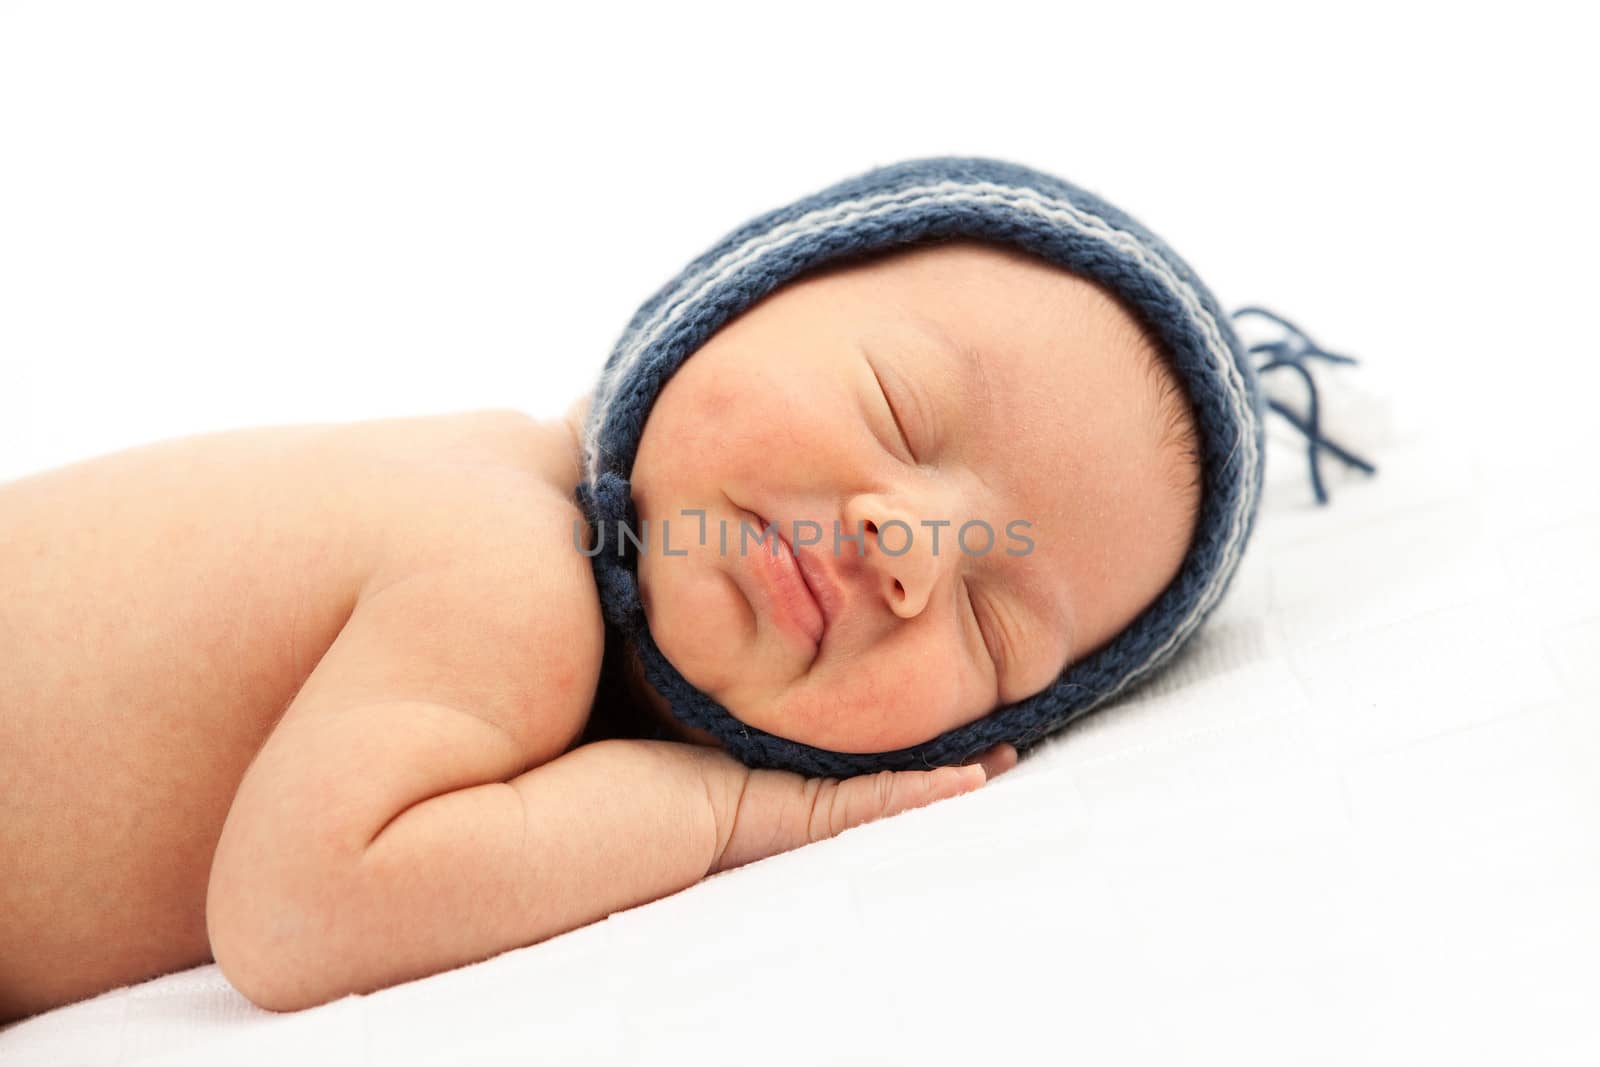 Newborn baby boy asleep over white background